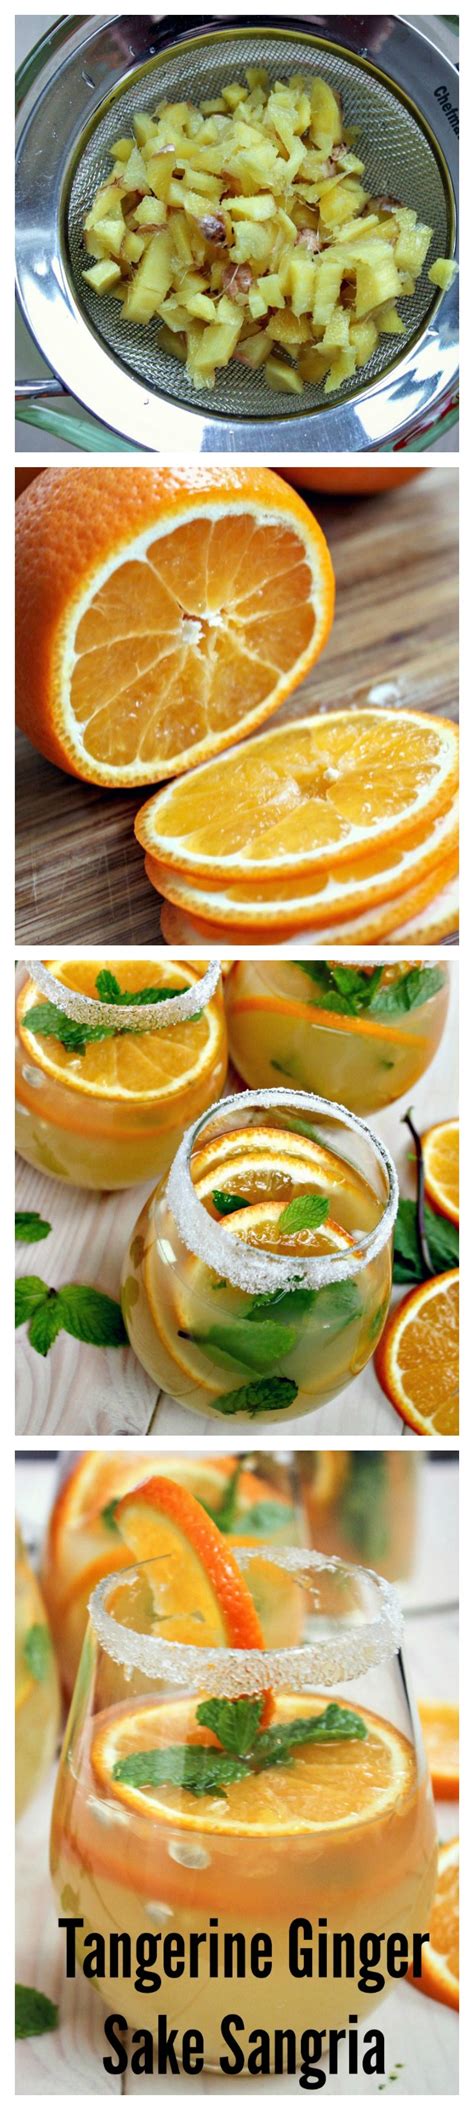 Tangerine Ginger Sake Sangria Recipe Delicious Drink